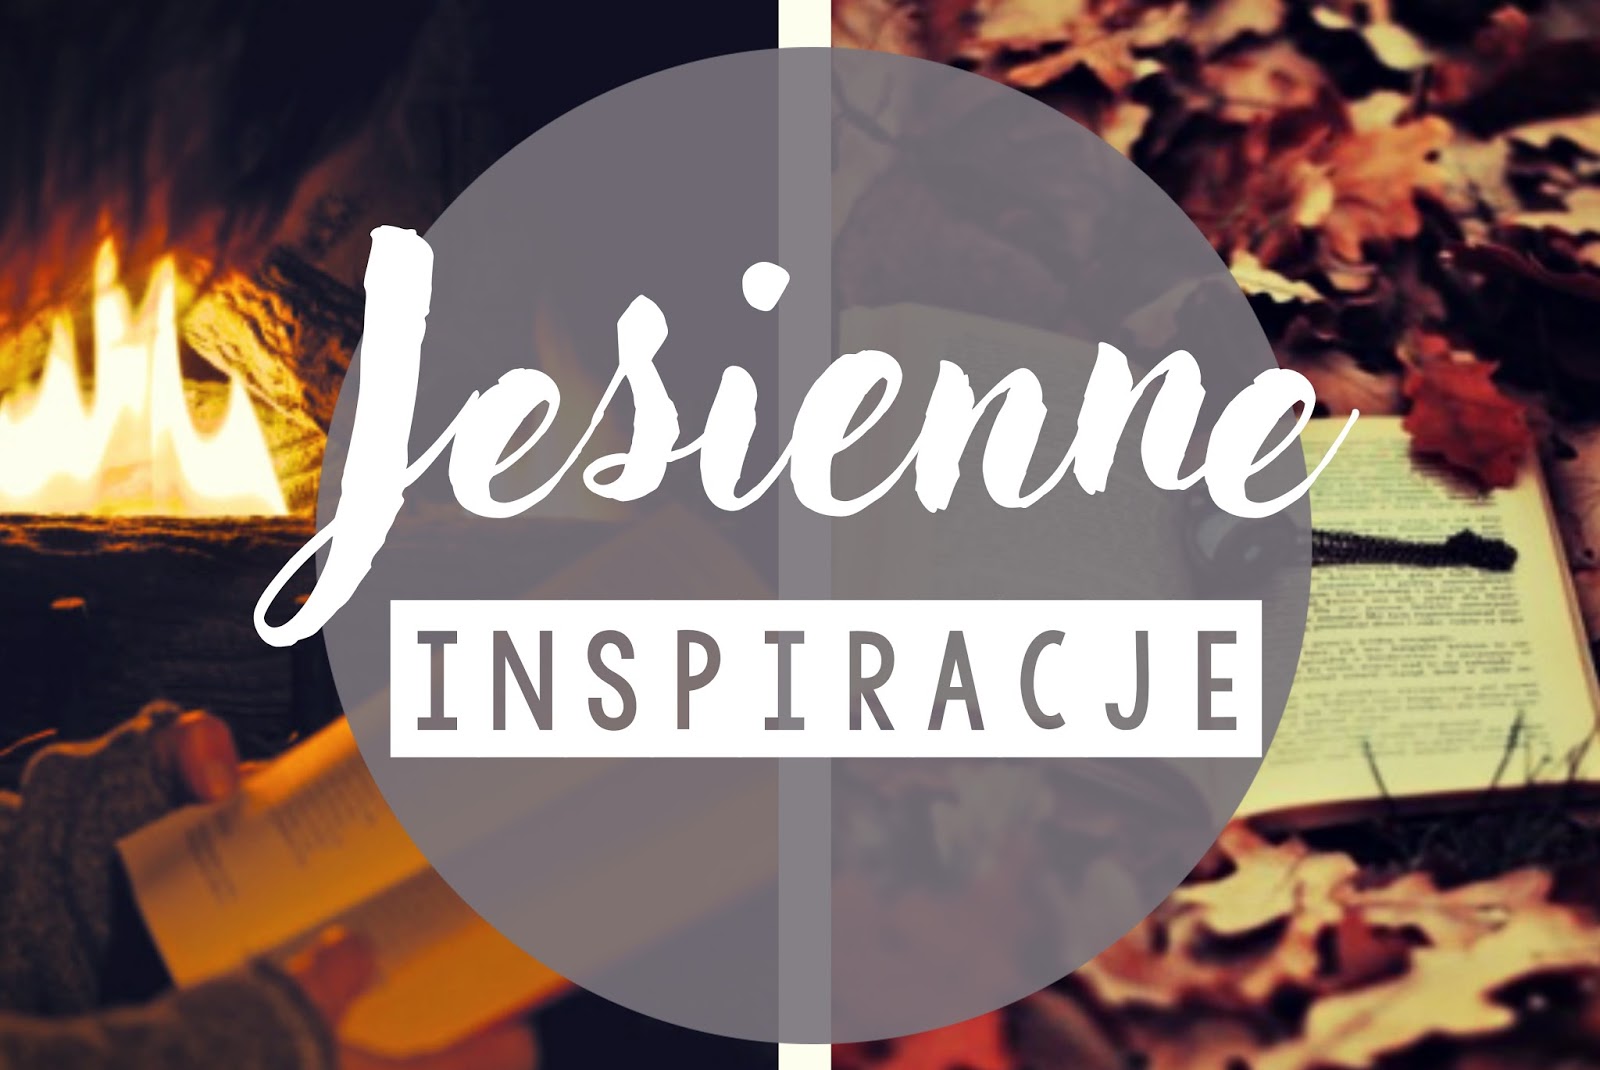 My life is Wonderful: Jesienne inspiracje 